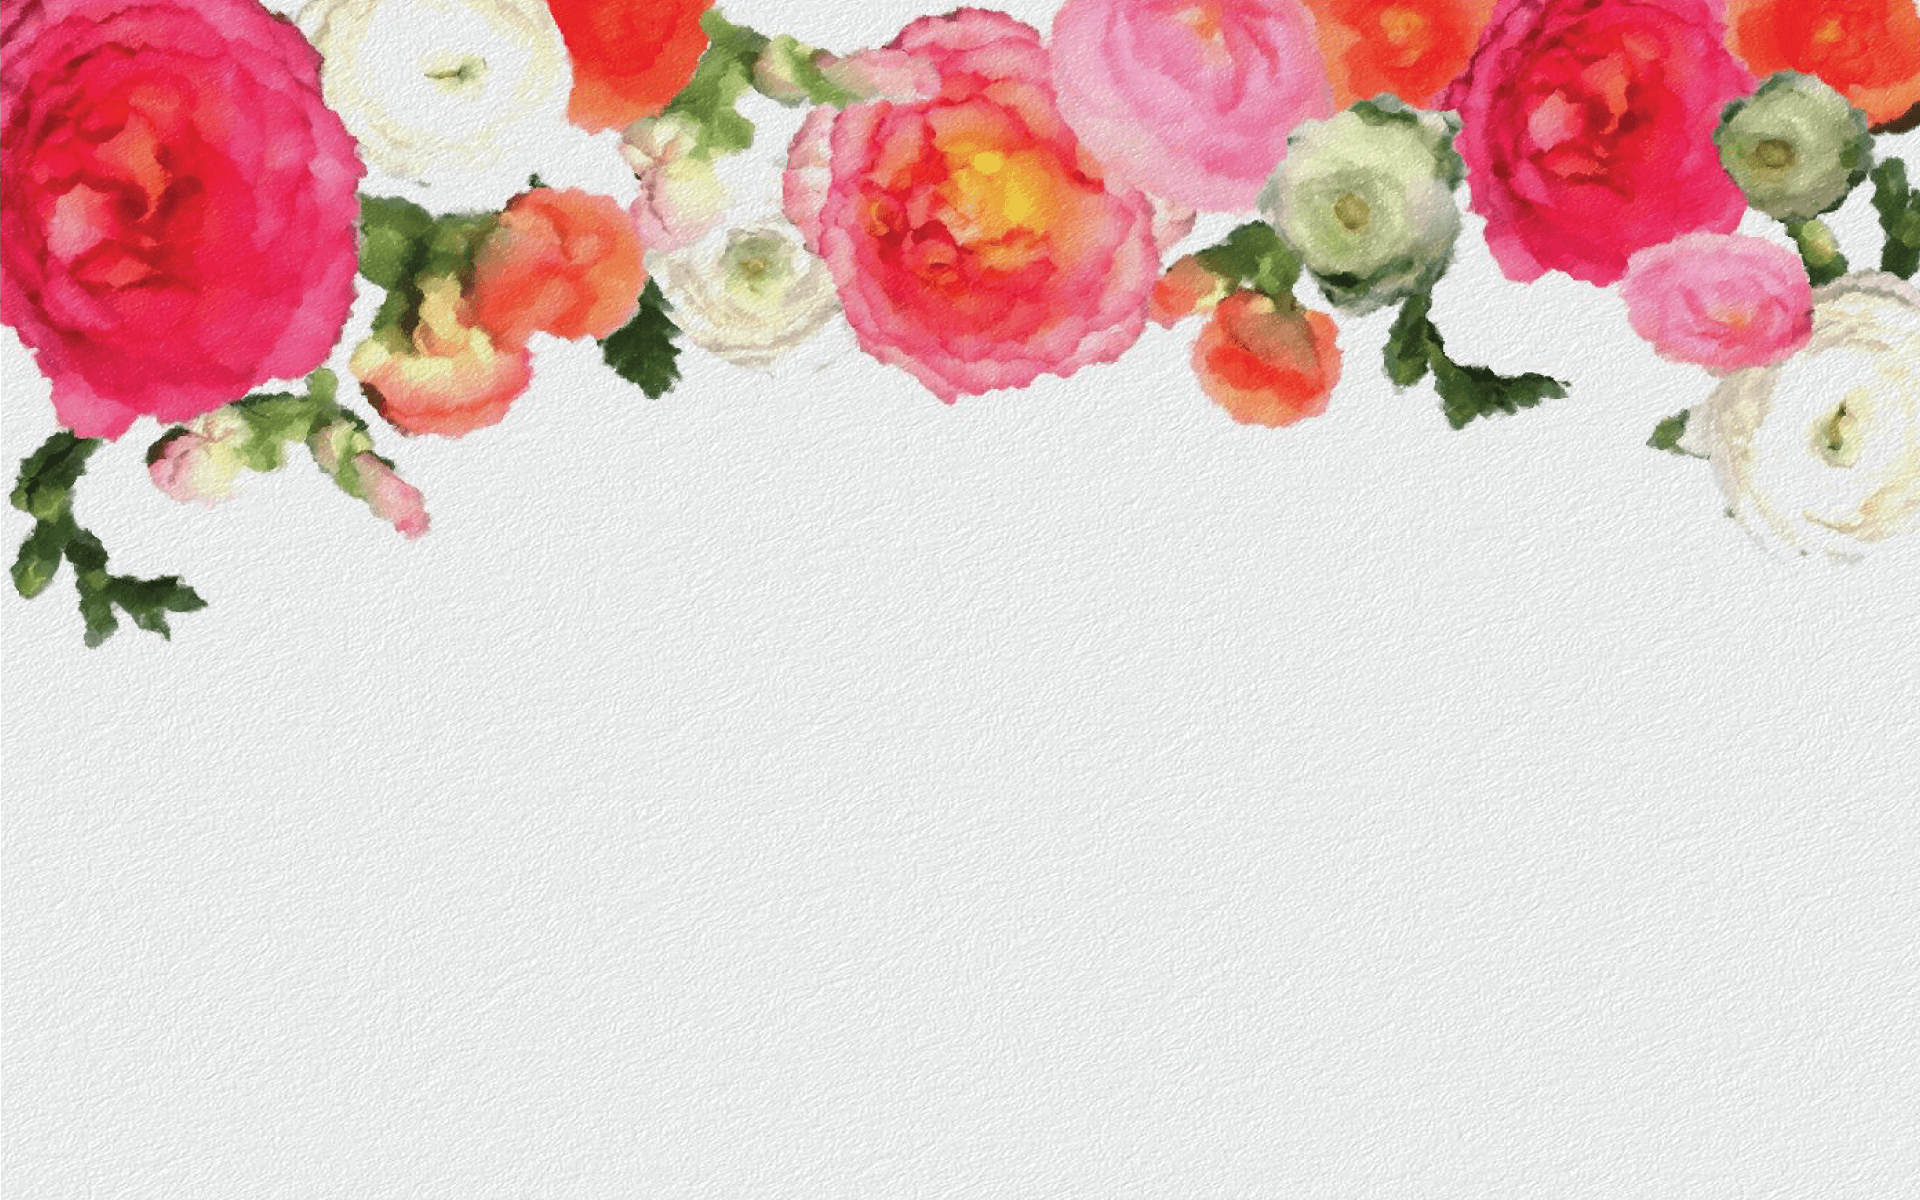 Aesthetic Flowers Desktop Wallpapers - Top Free Aesthetic Flowers